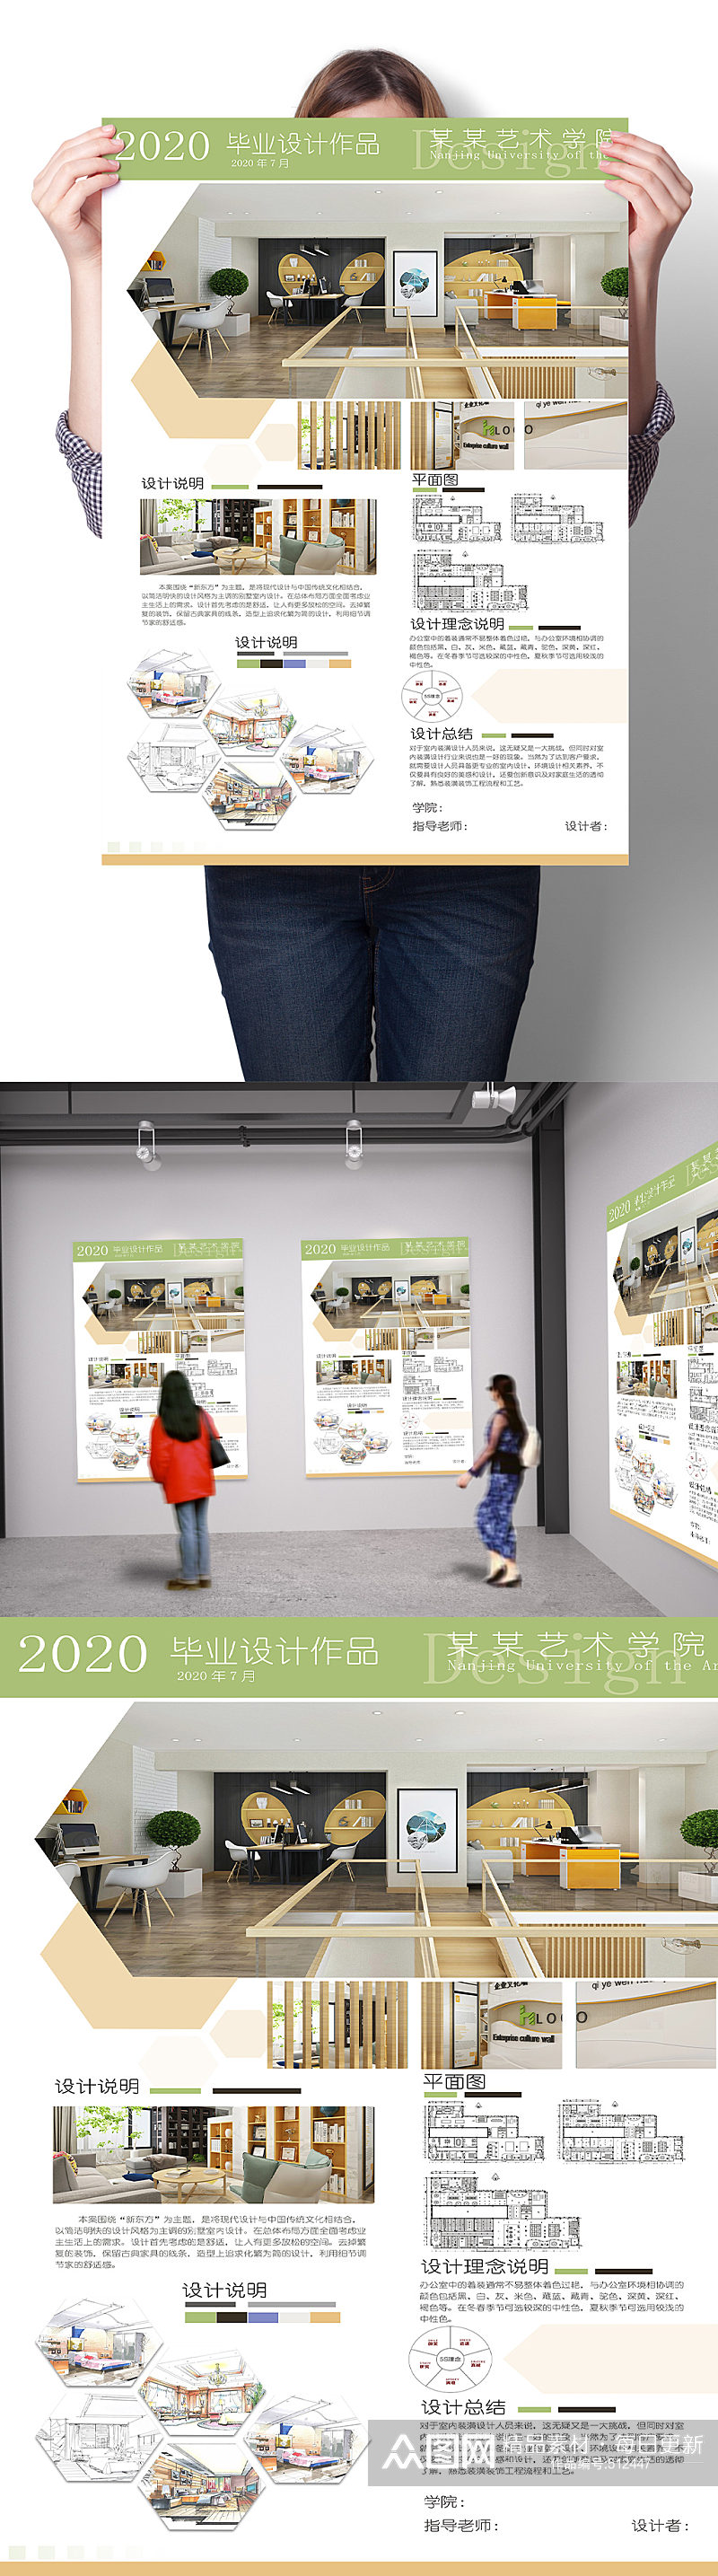 2020年办公区室内设计毕业展海报展板 环艺排版环境艺术版式设计素材